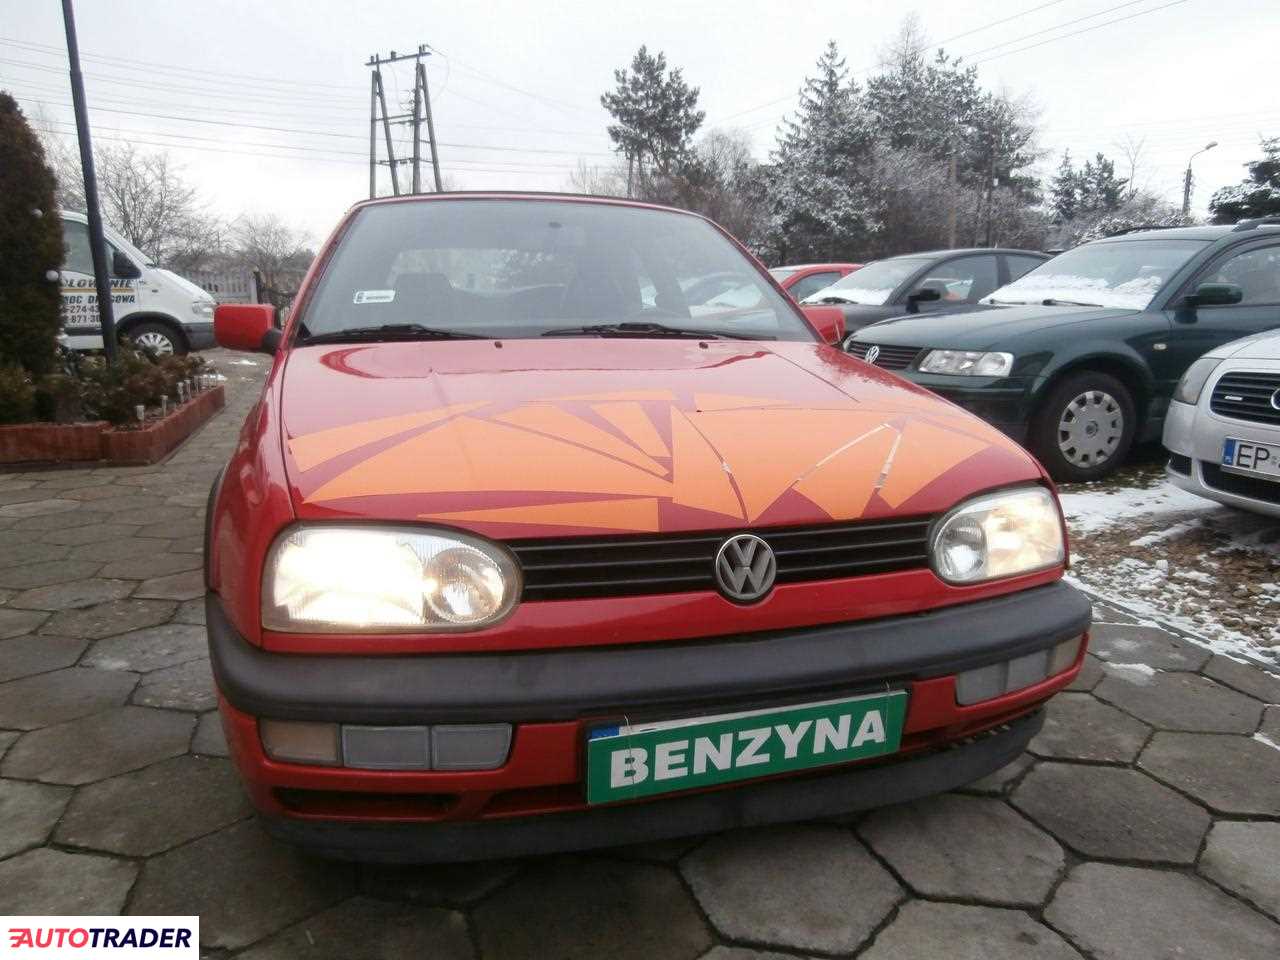 Volkswagen Golf 2.0 benzyna 116 KM 1996r. (Dobieszowice